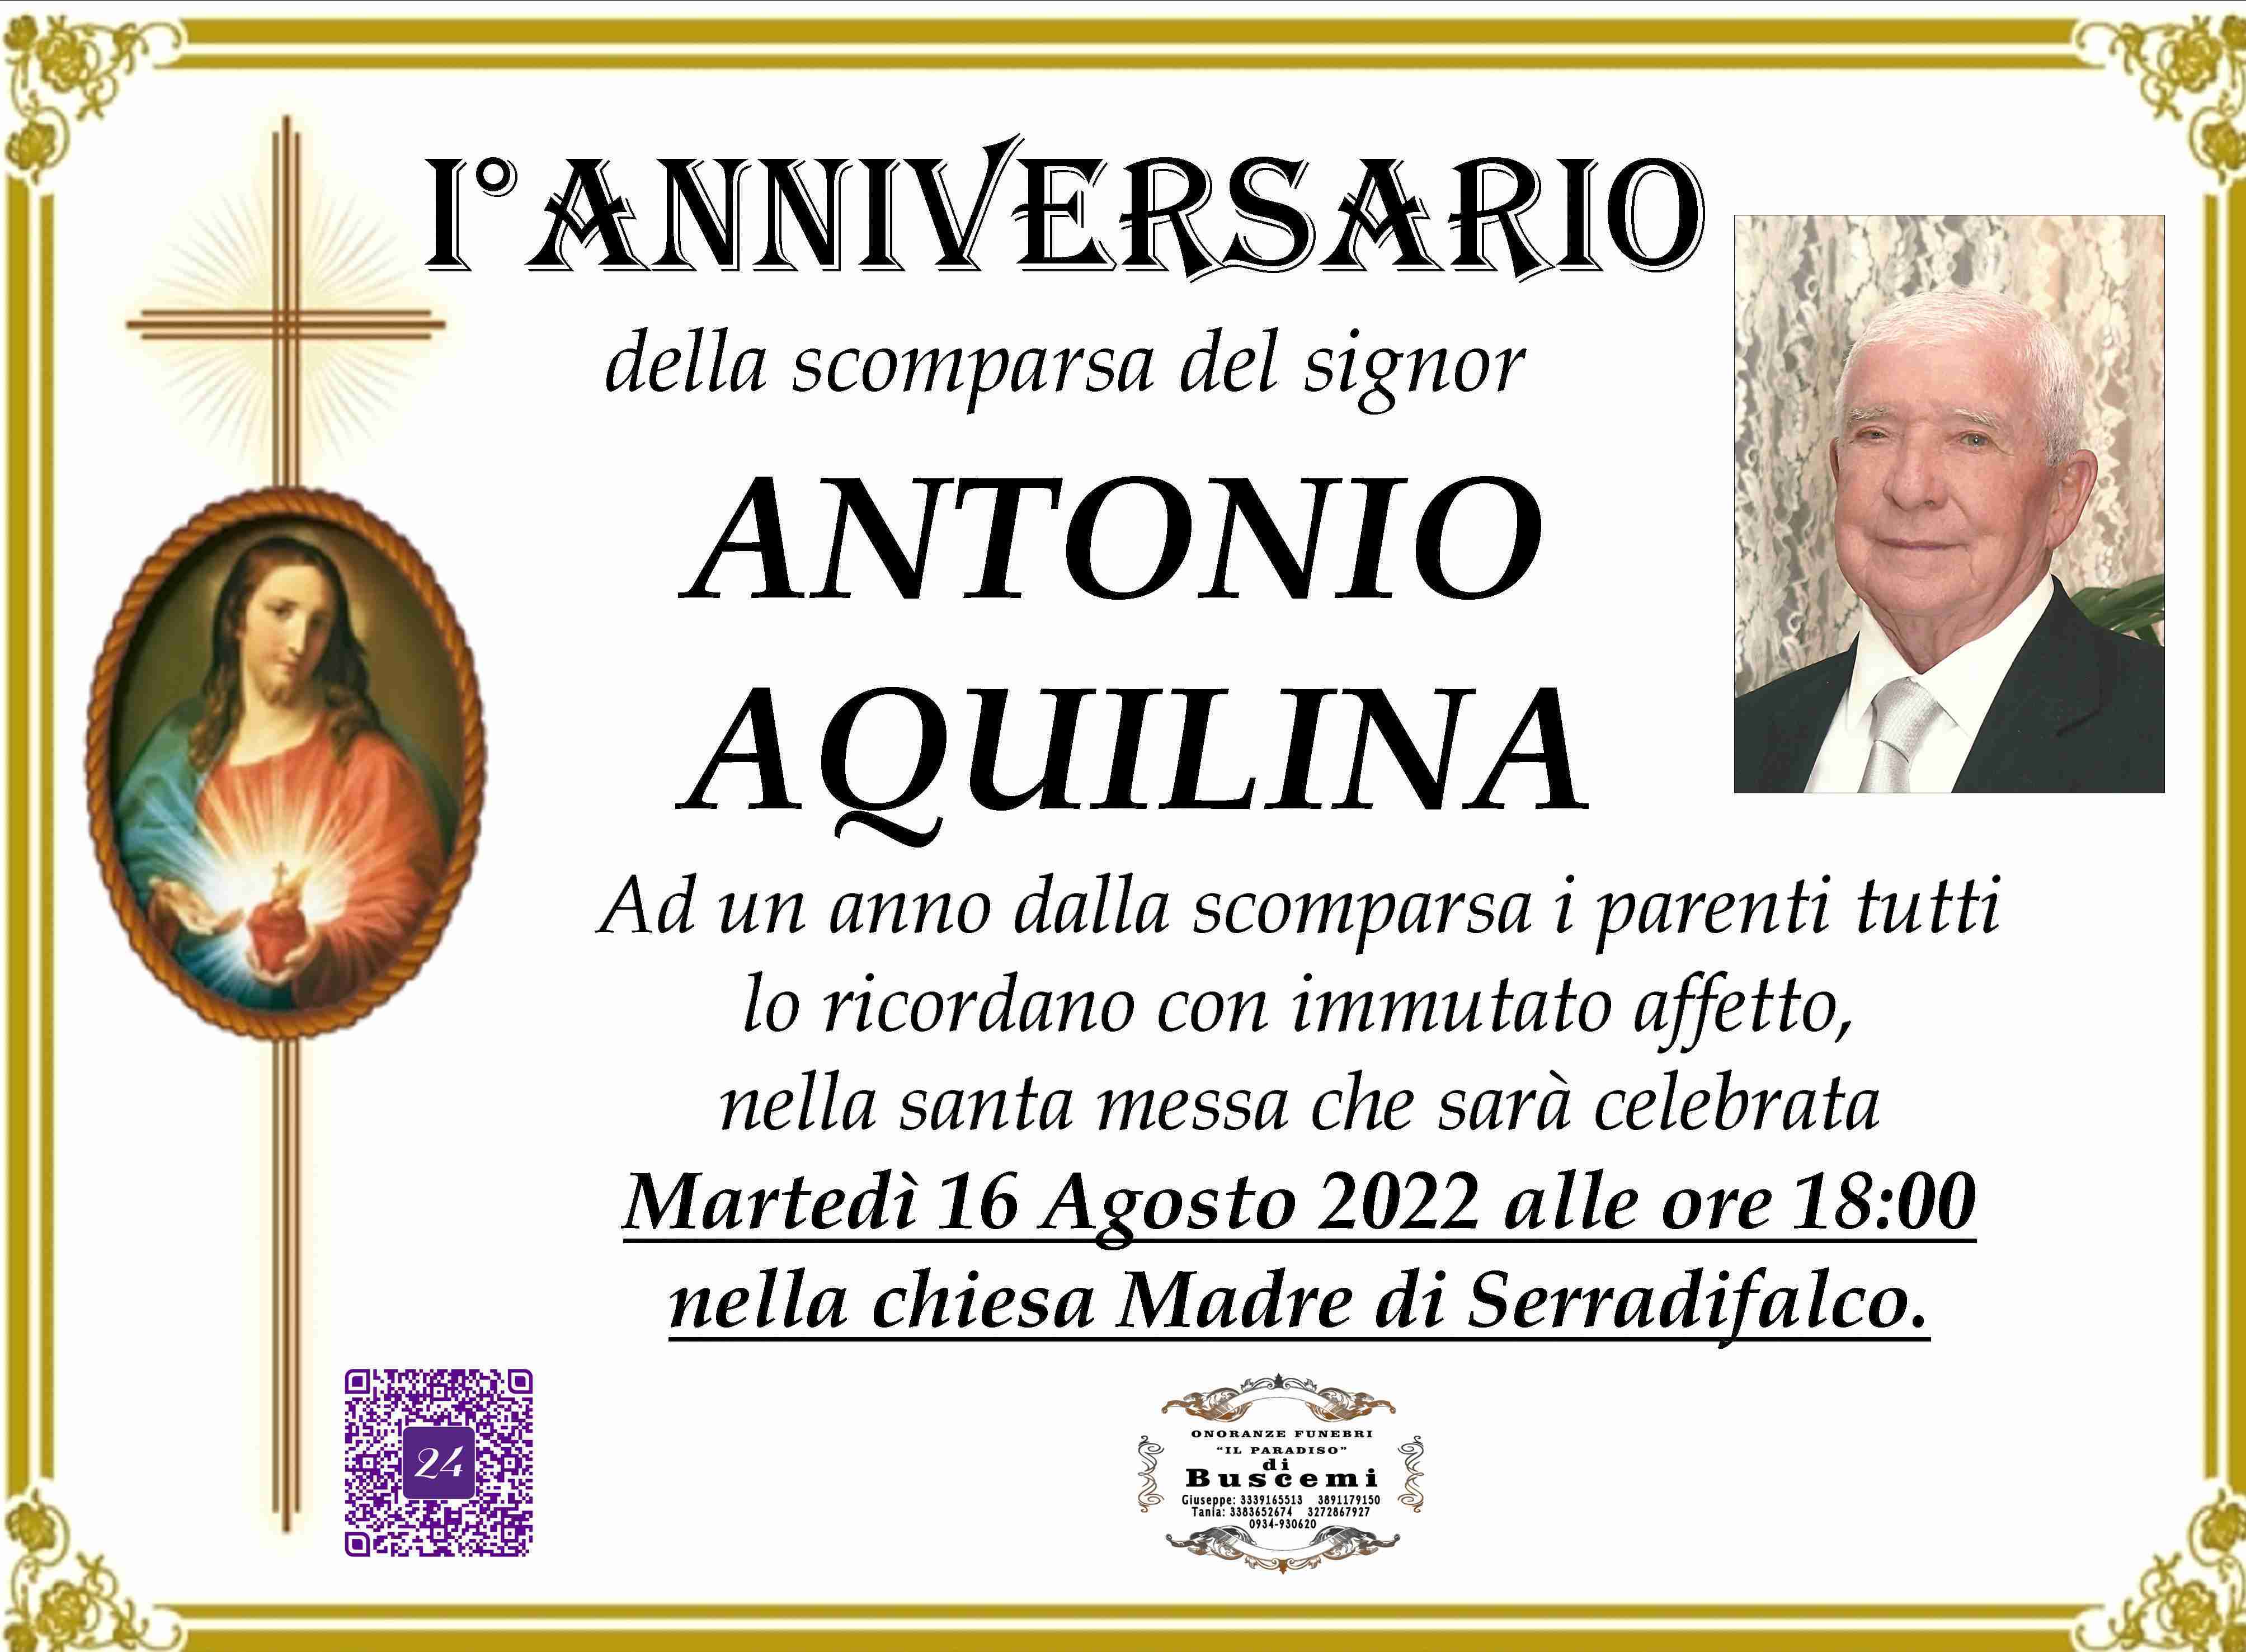 Antonio Aquilina